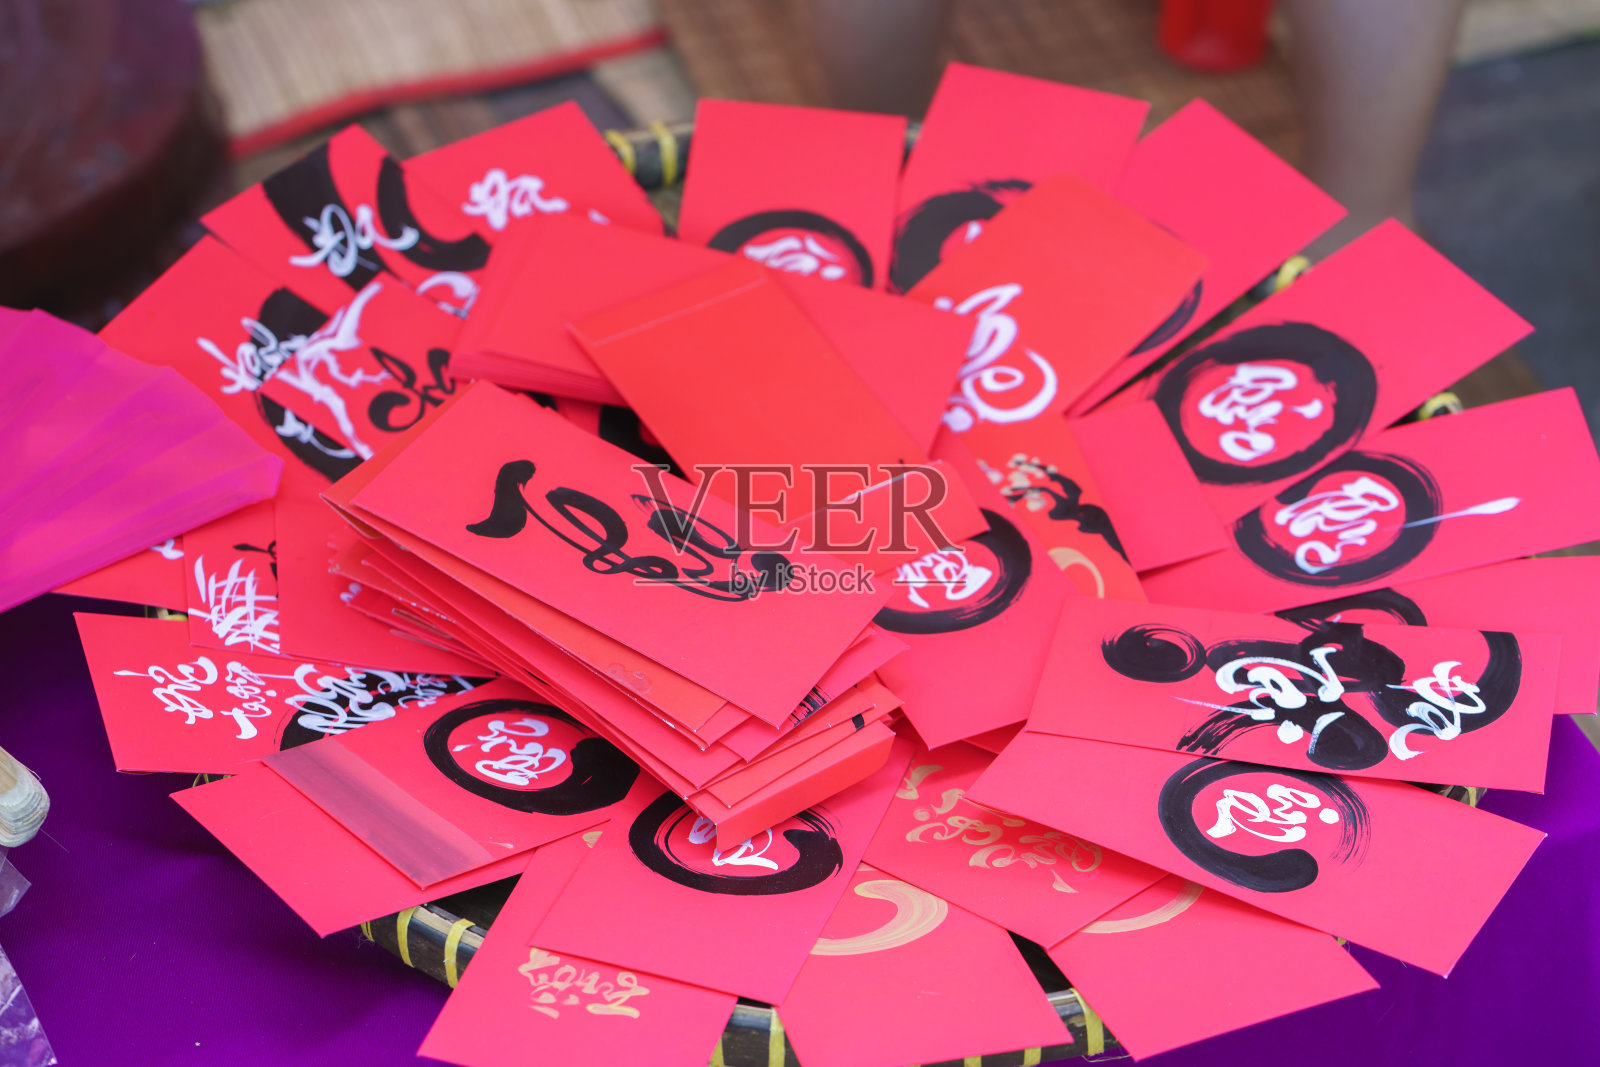 越南的农历新年书法红包，上面写着“功德、财运、长寿”照片摄影图片